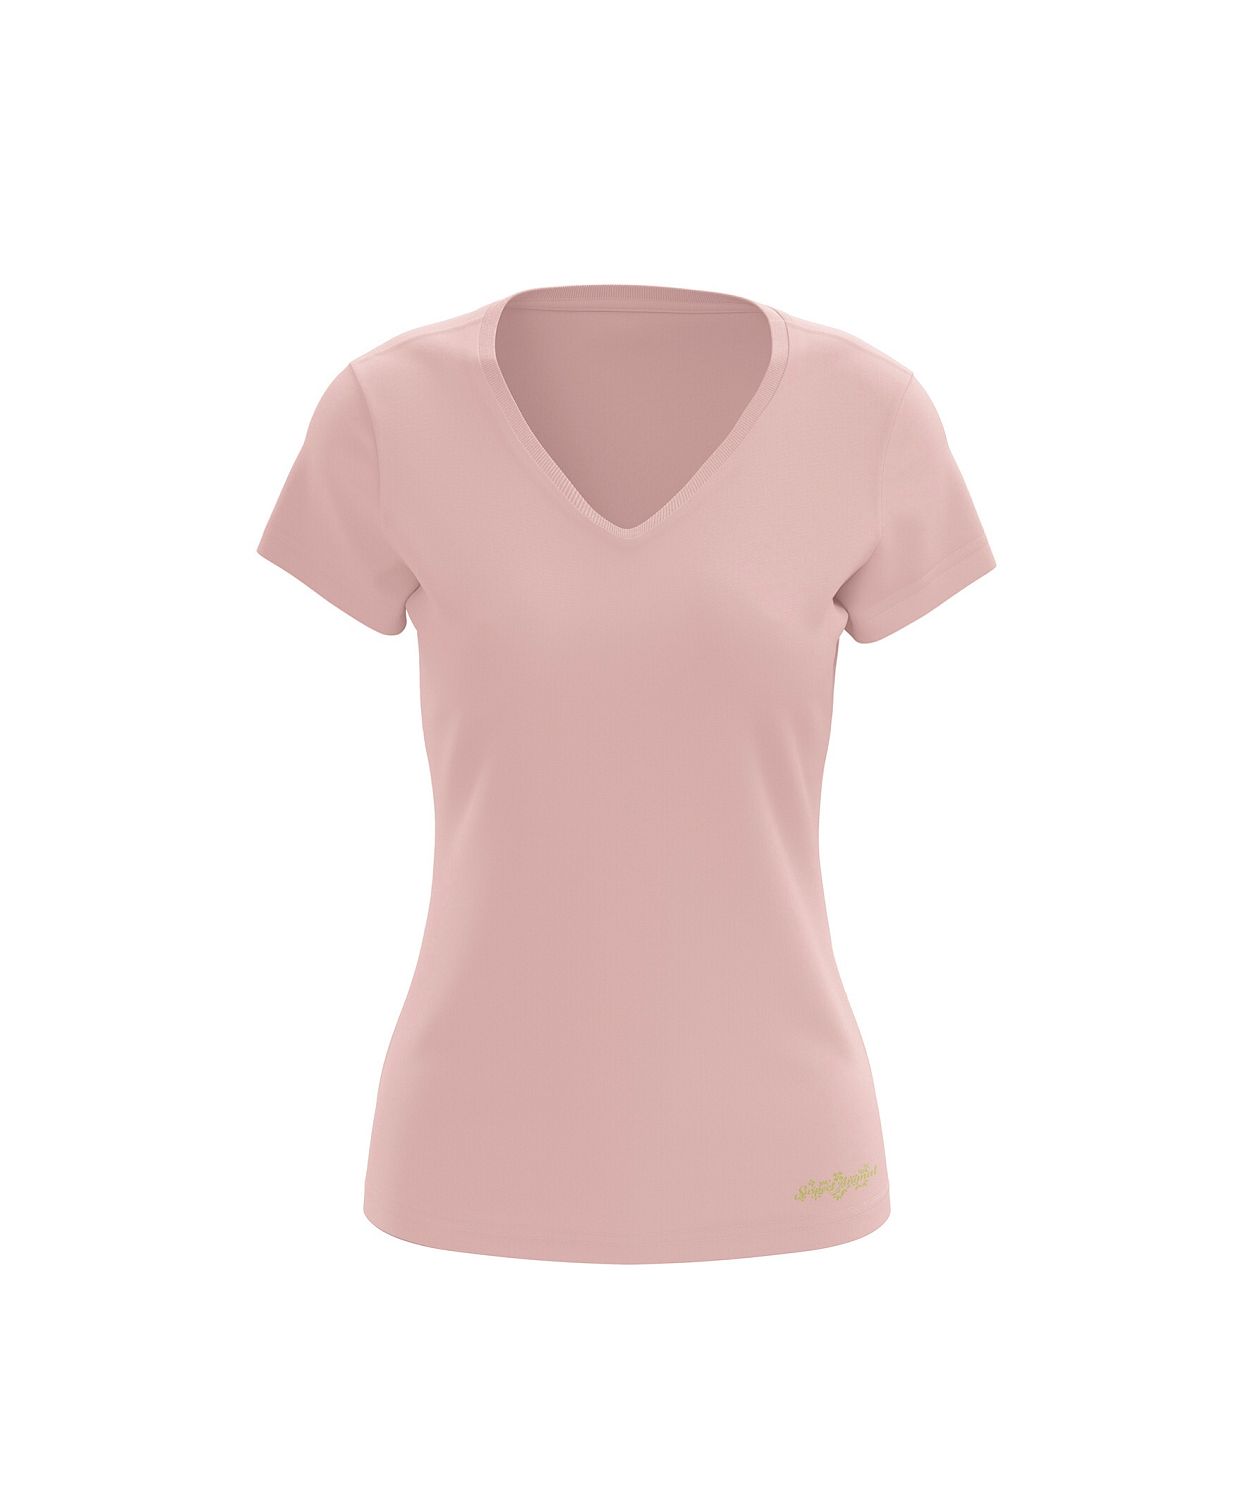 Dámské funkční tričko SPORTY "V" krátký rukáv světlá růžová Bamboo Ultra CLASSIC